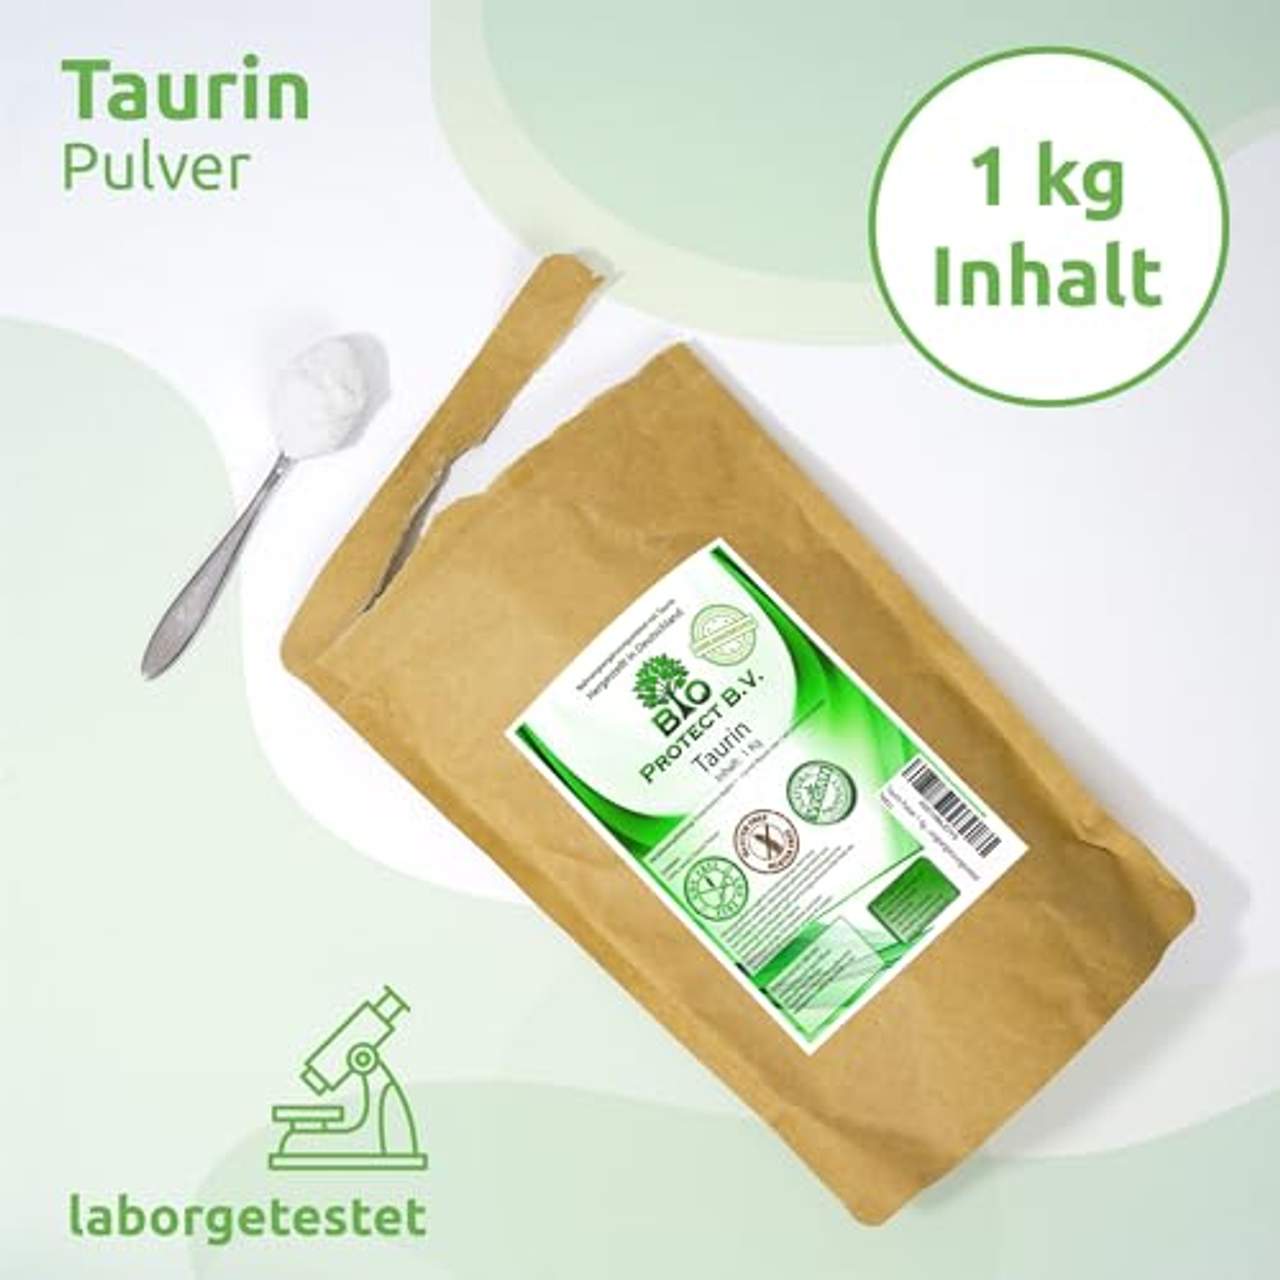 Taurin Pulver 1 Kg 100% rein ohne Zusatzstoffe